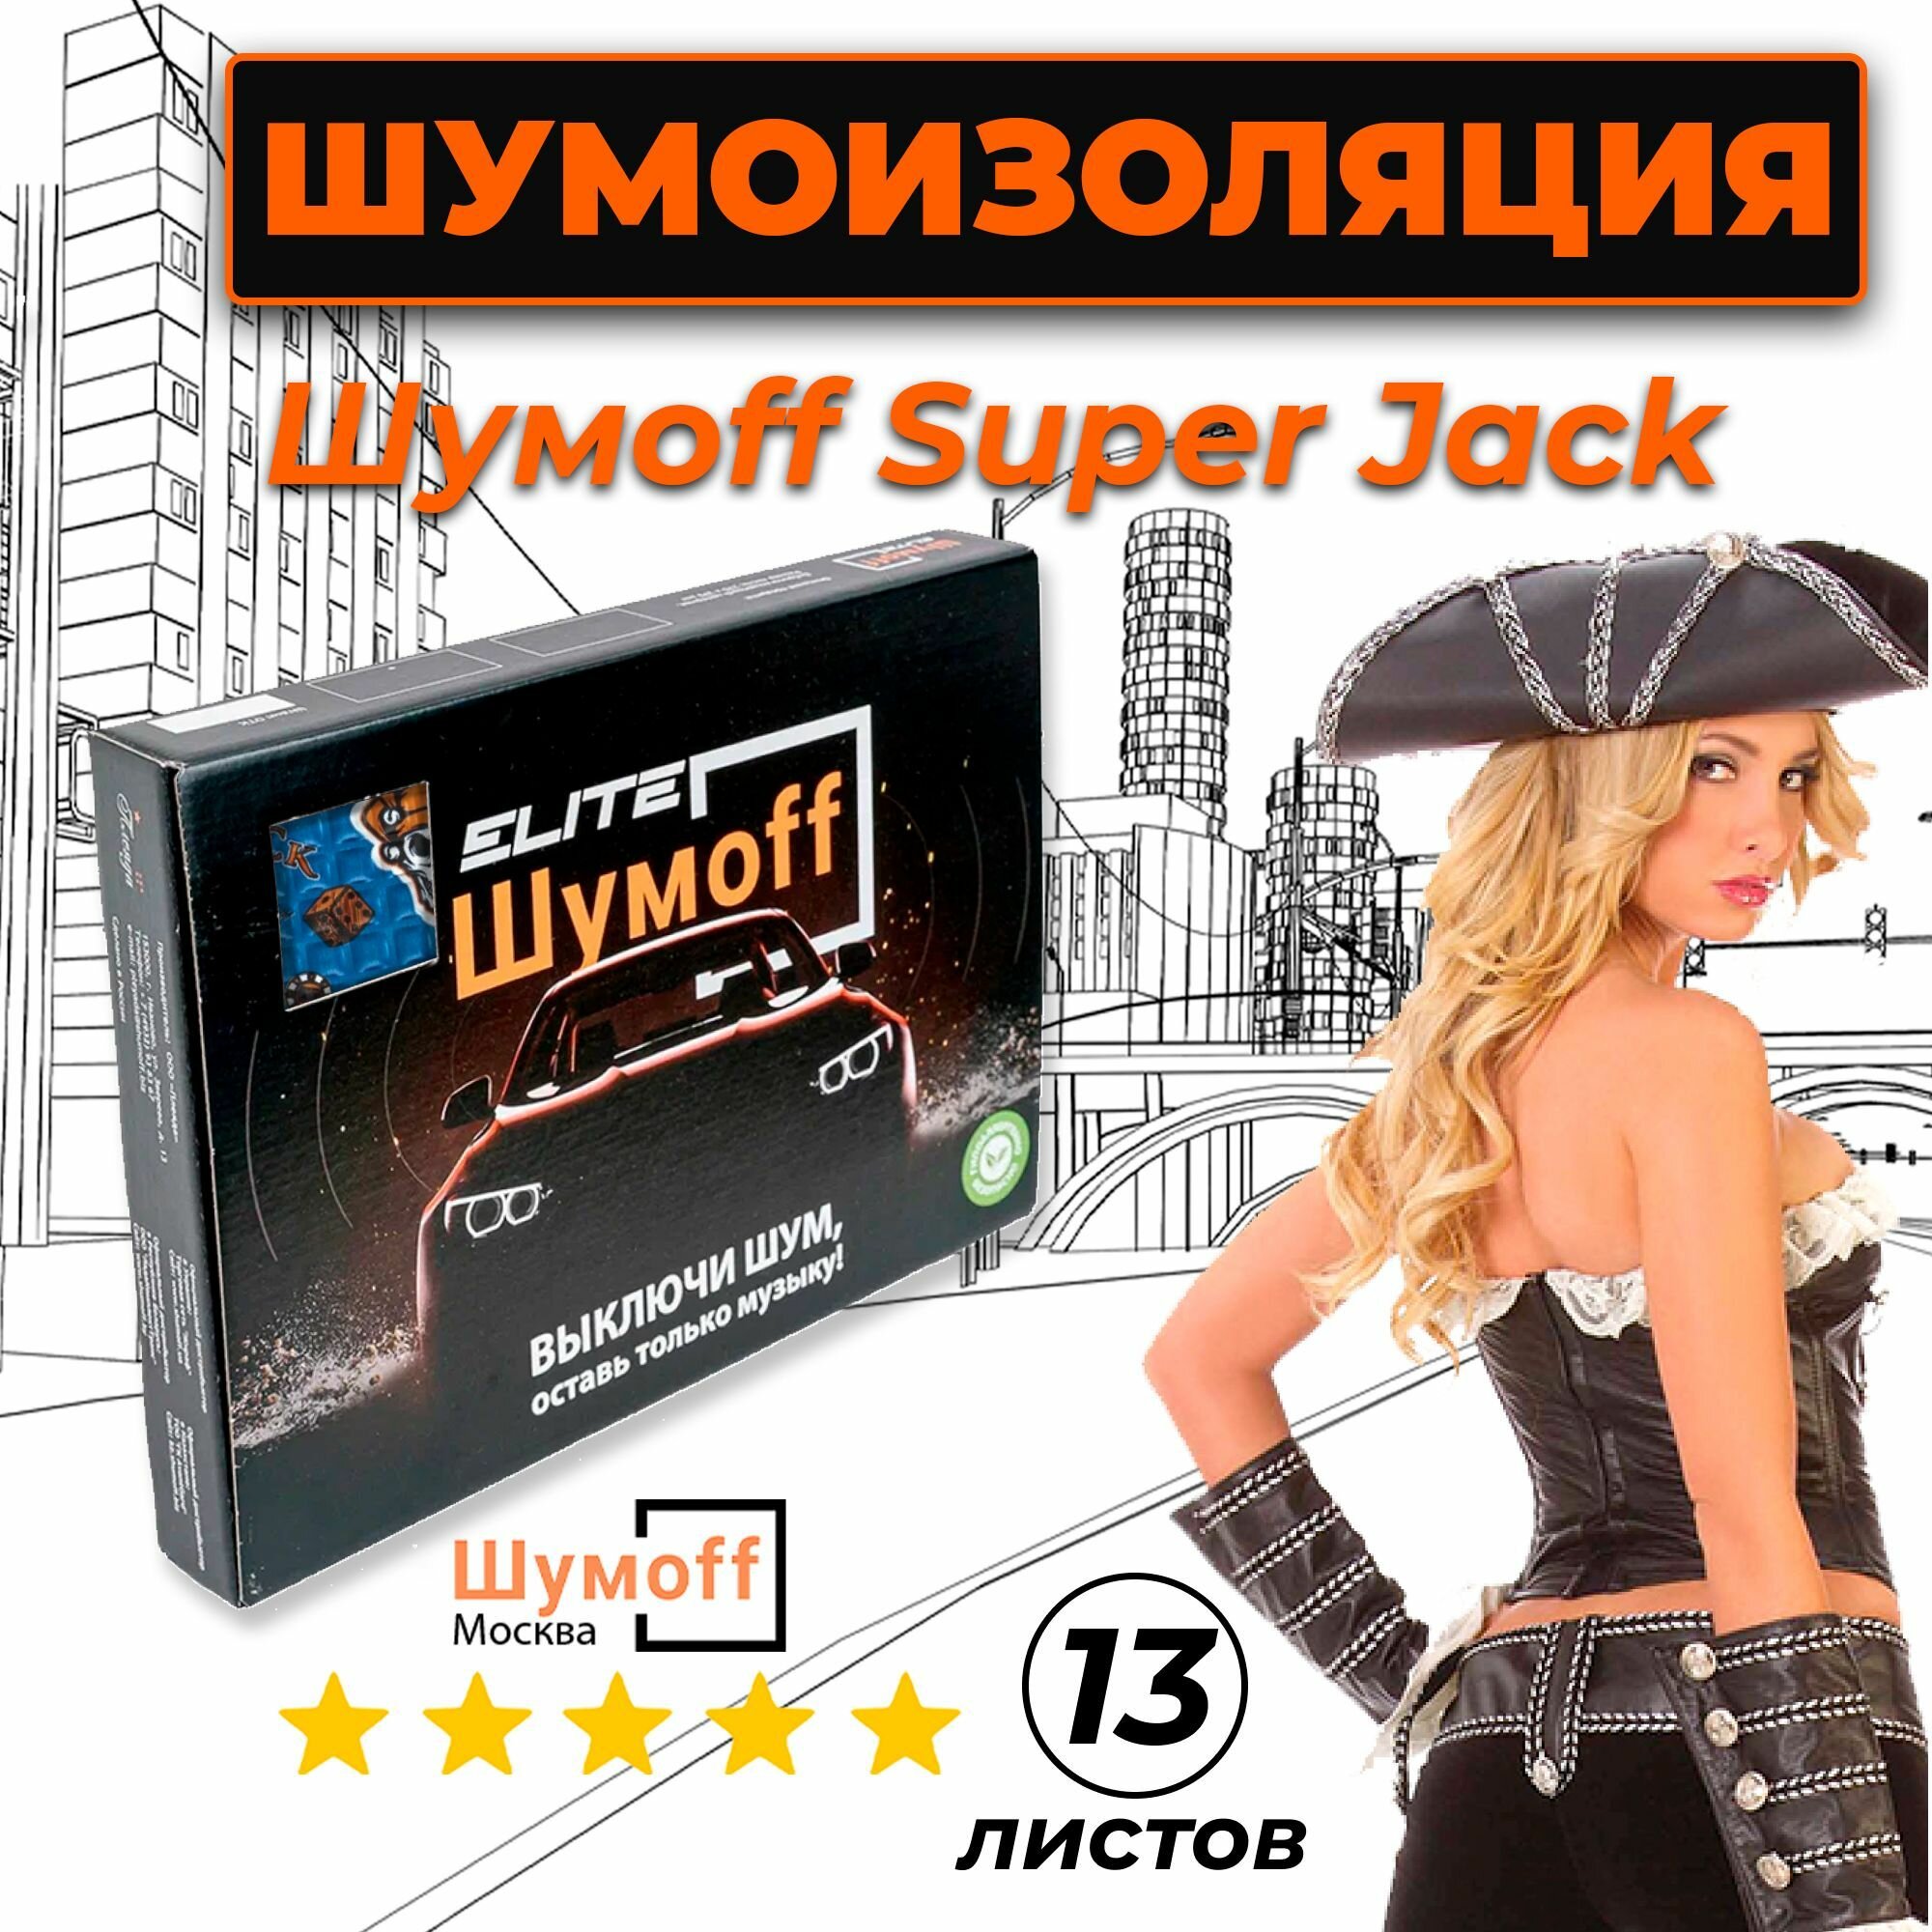 Шумоизоляция Шумофф Super Jack 3.6мм упаковка (13 листов) - Виброизоляция для автомобиля и в быту Супер Джек - аналог М4